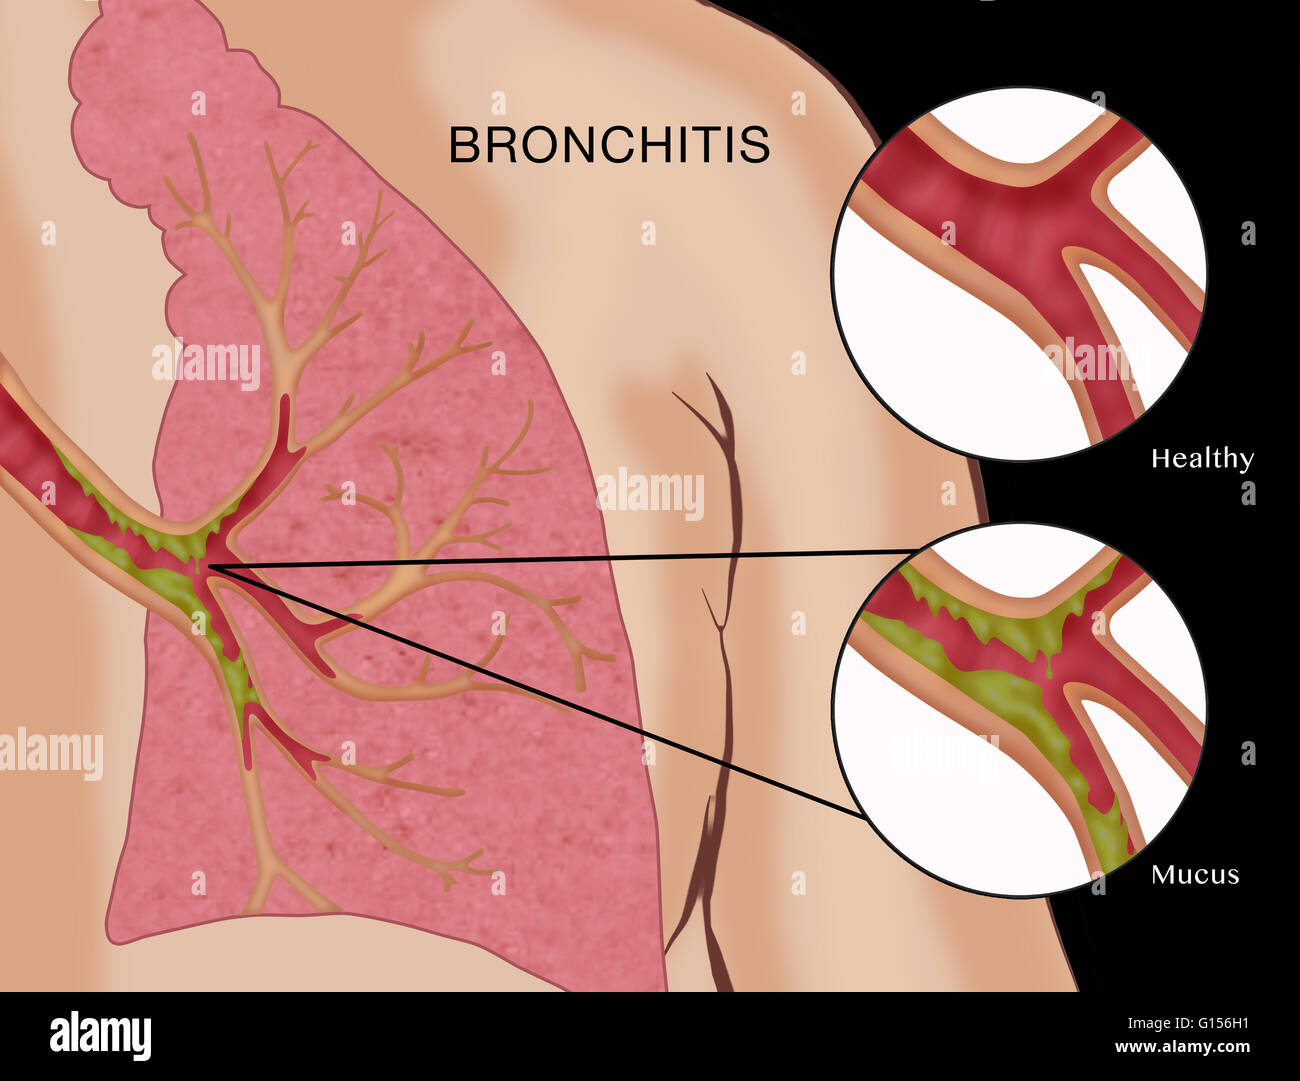 Abbildung mit Bronchitis, eine Krankheit, in denen die Schleimhäute der  Bronchien (Atemwege in die Lunge) entzündet und mit Schleim verstopft  werden. Es gibt zwei Arten: akute und chronische. Ersteres ist in der